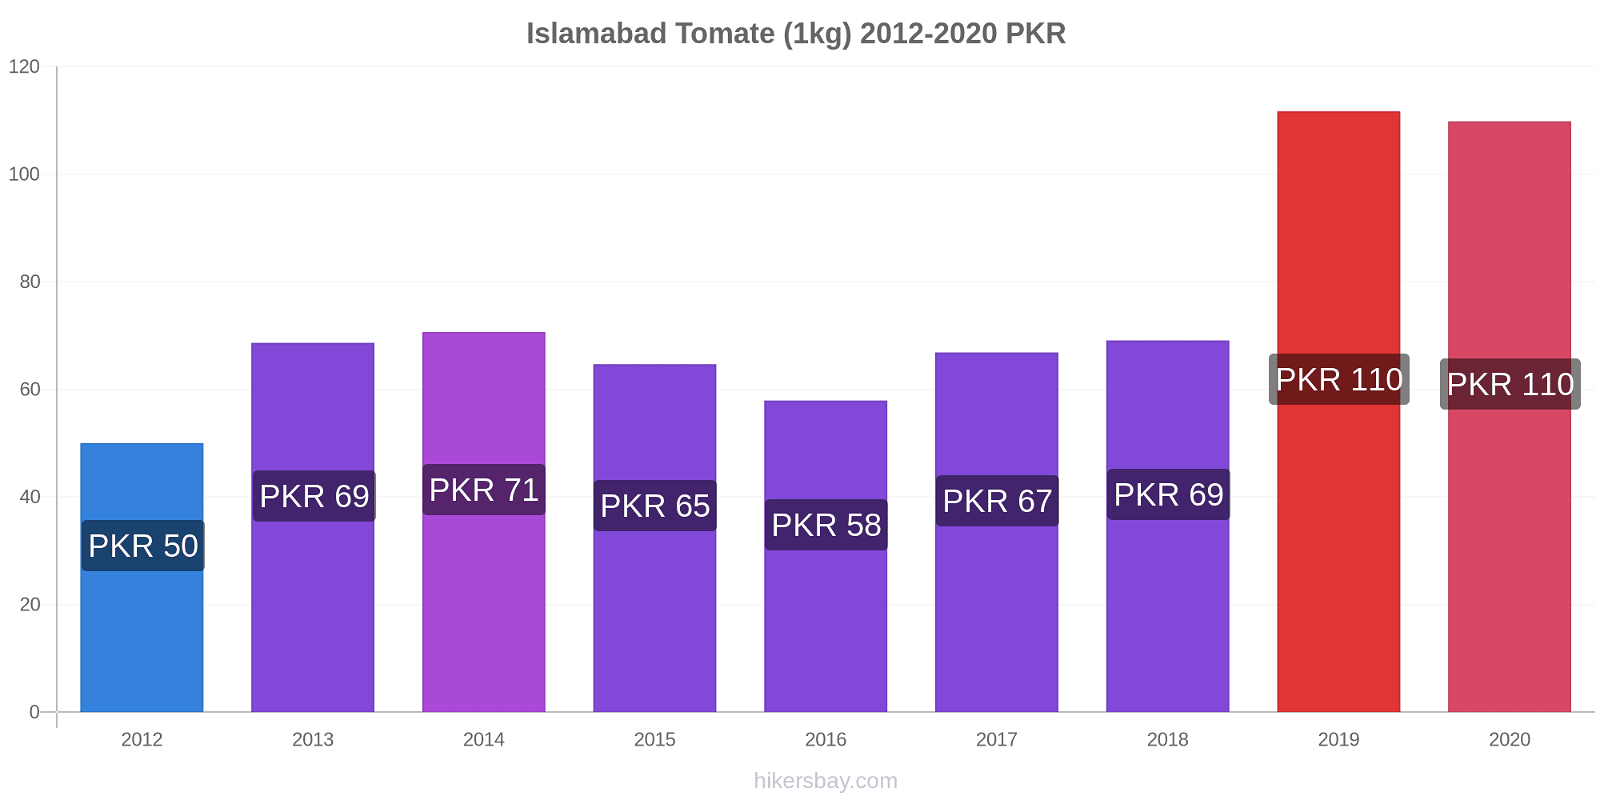 Islamabad changements de prix Tomate (1kg) hikersbay.com